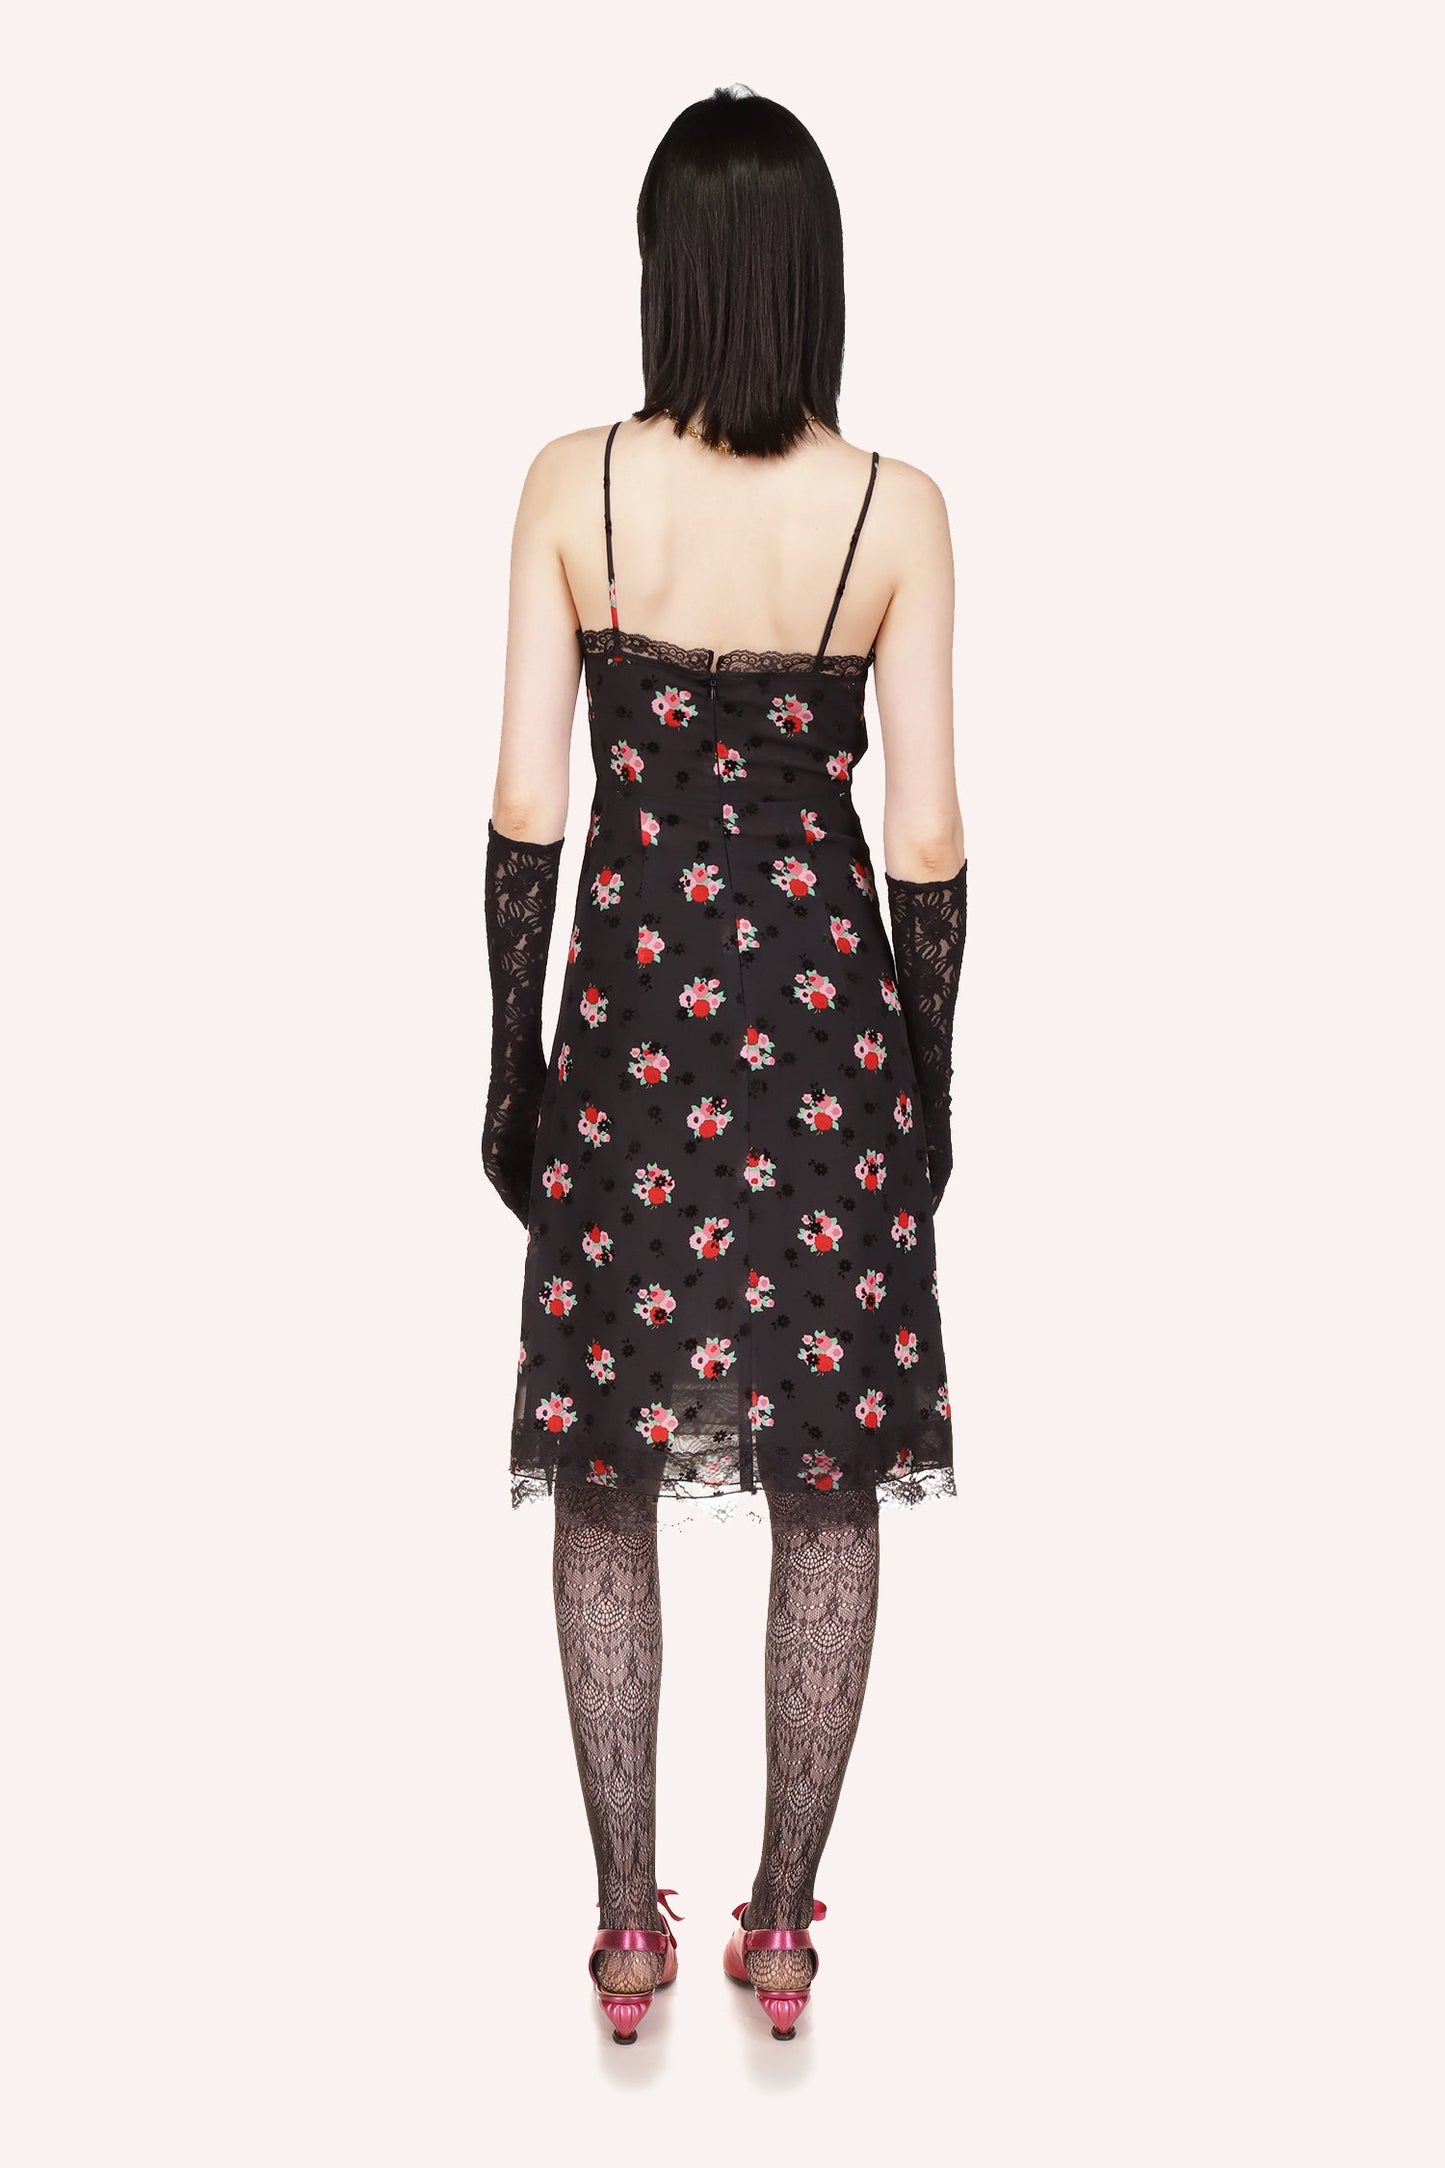 Anna Sui's Rosie Posie Slip Dress in Black Multi with the Rosie Posie bouquet pattern, back zipper